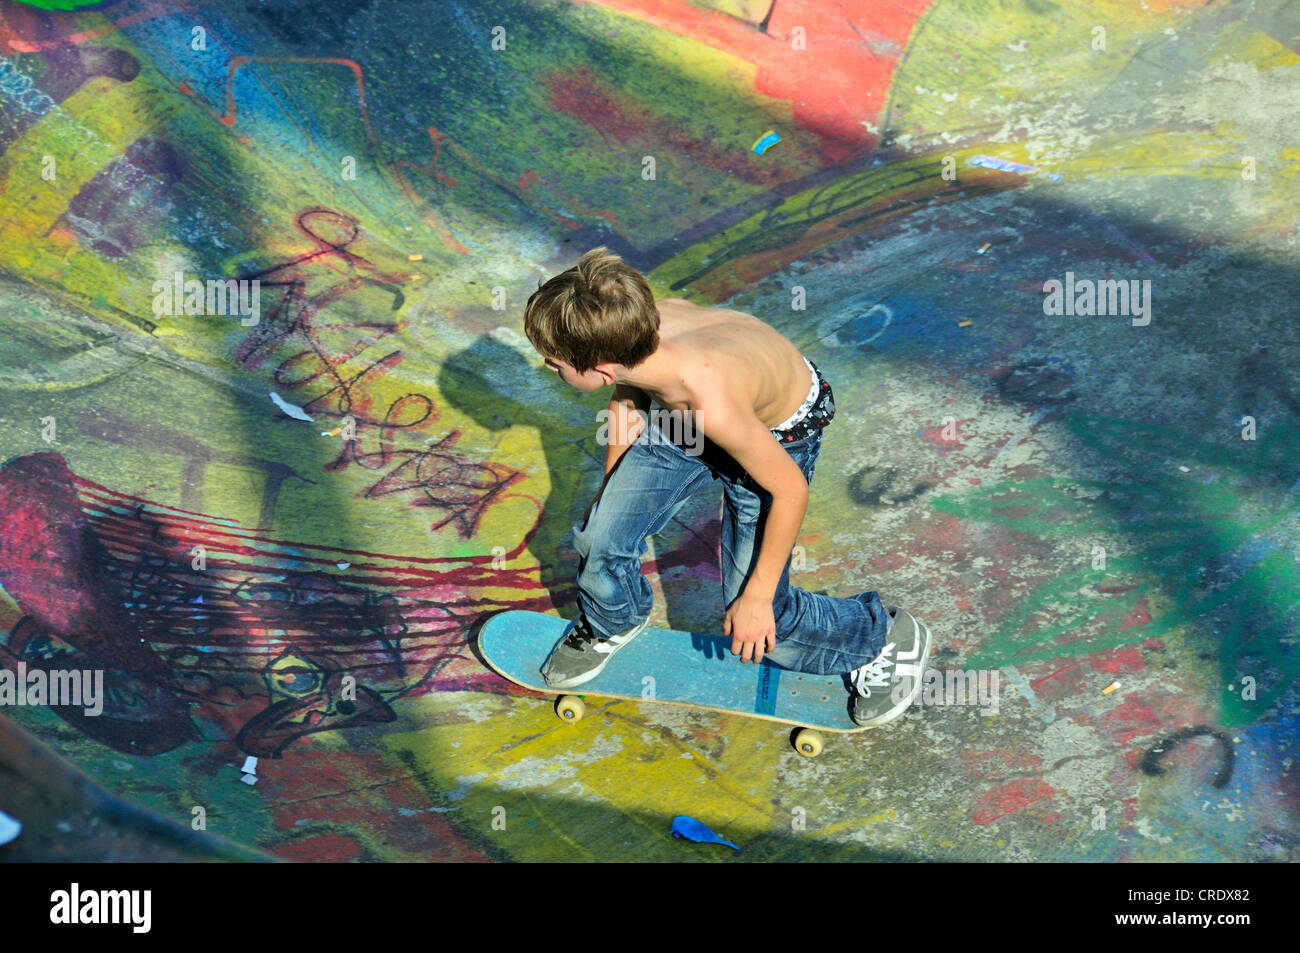 La planche, 10 ans, bol d'un rampe de skate, Bruxelles, Belgique, Europe, PublicGround Banque D'Images